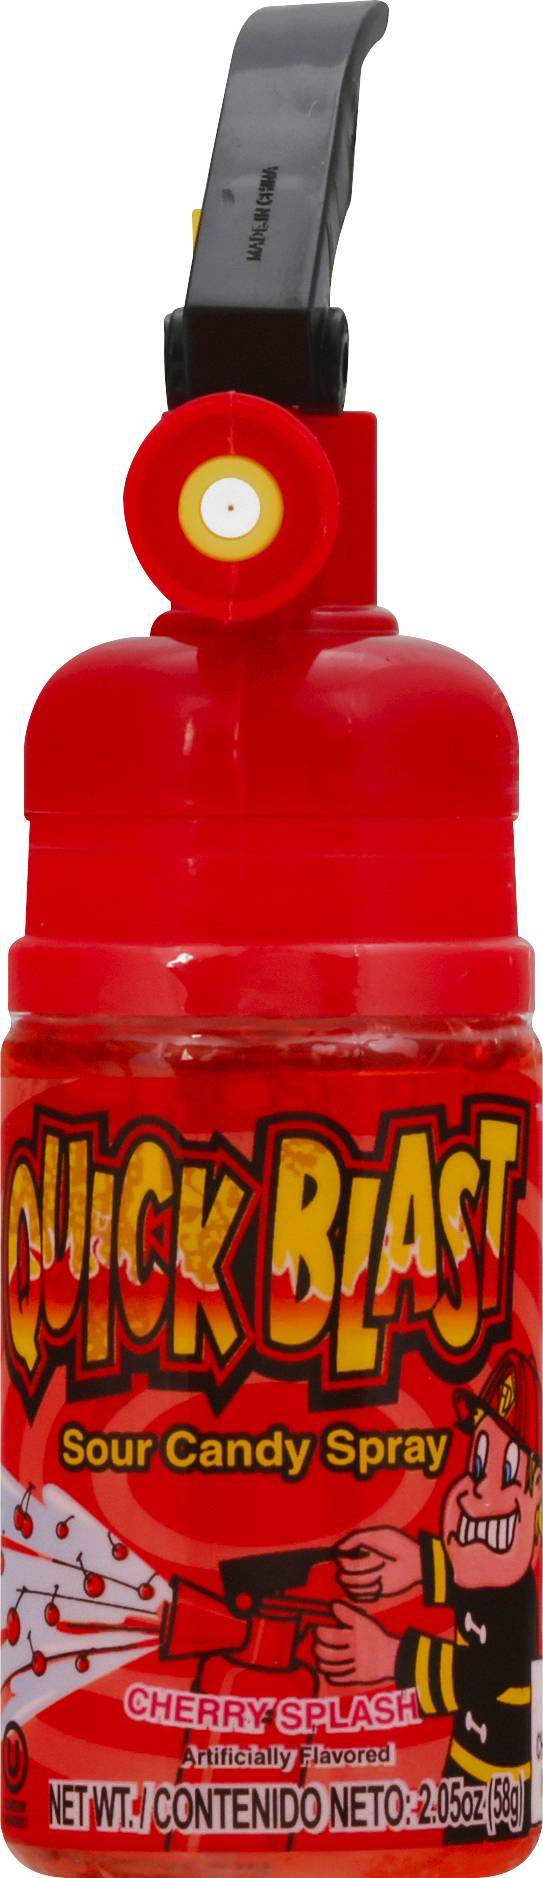 Quick Blast Sour Cherry Splash Candy Spray